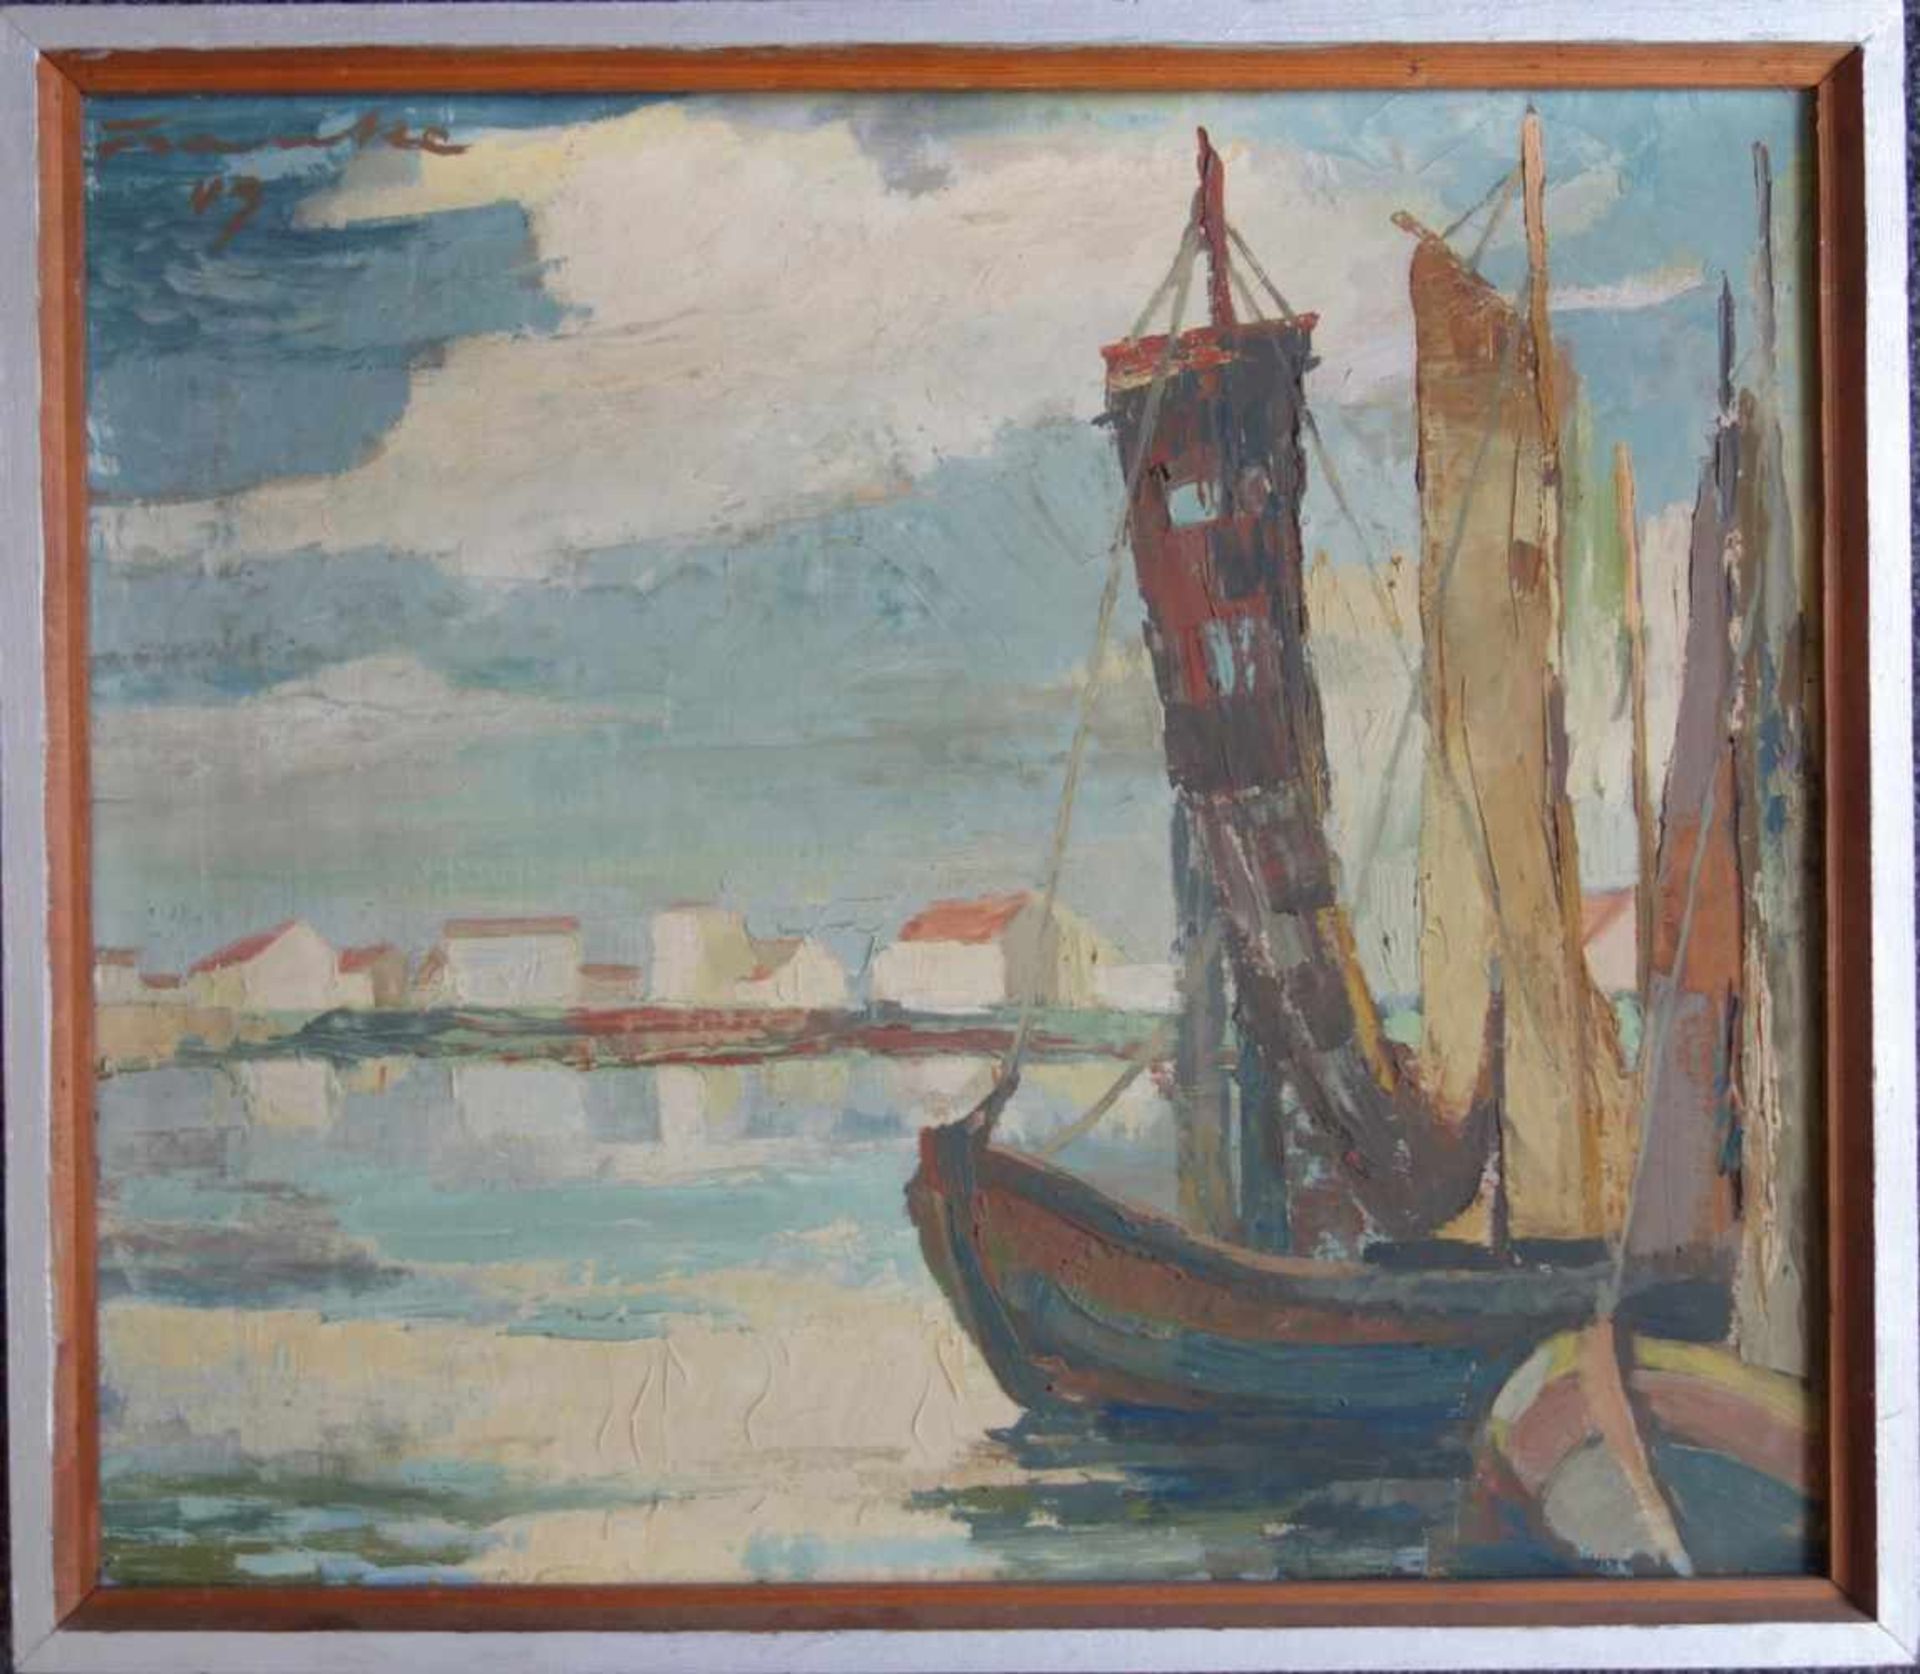 Franke, Bernhard, "Fischerboote von Hiddensee", 1949 1922 Bitterfeld - 2004 Gyhum; Öl/Karton, vorn